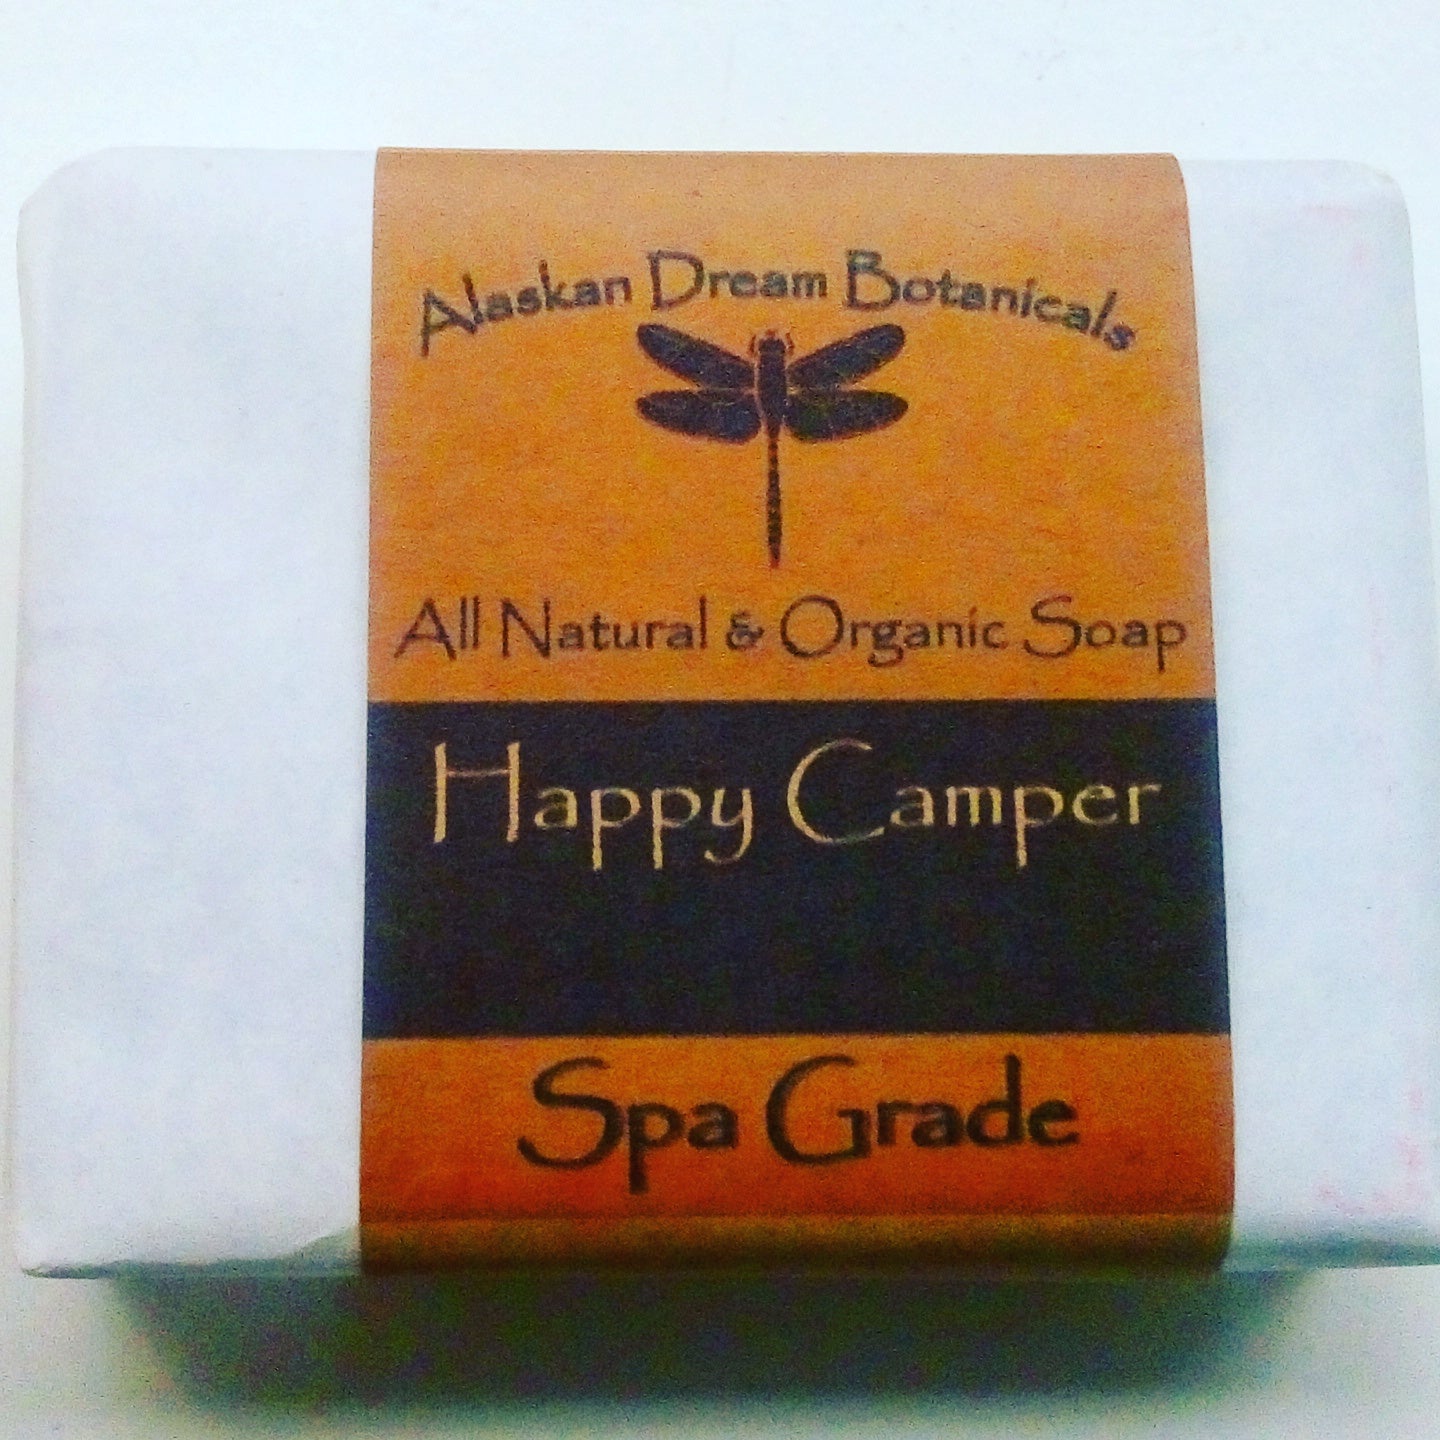 Happy Camper Spa Grade Bar Soap - Alaskan Dream Botanicals